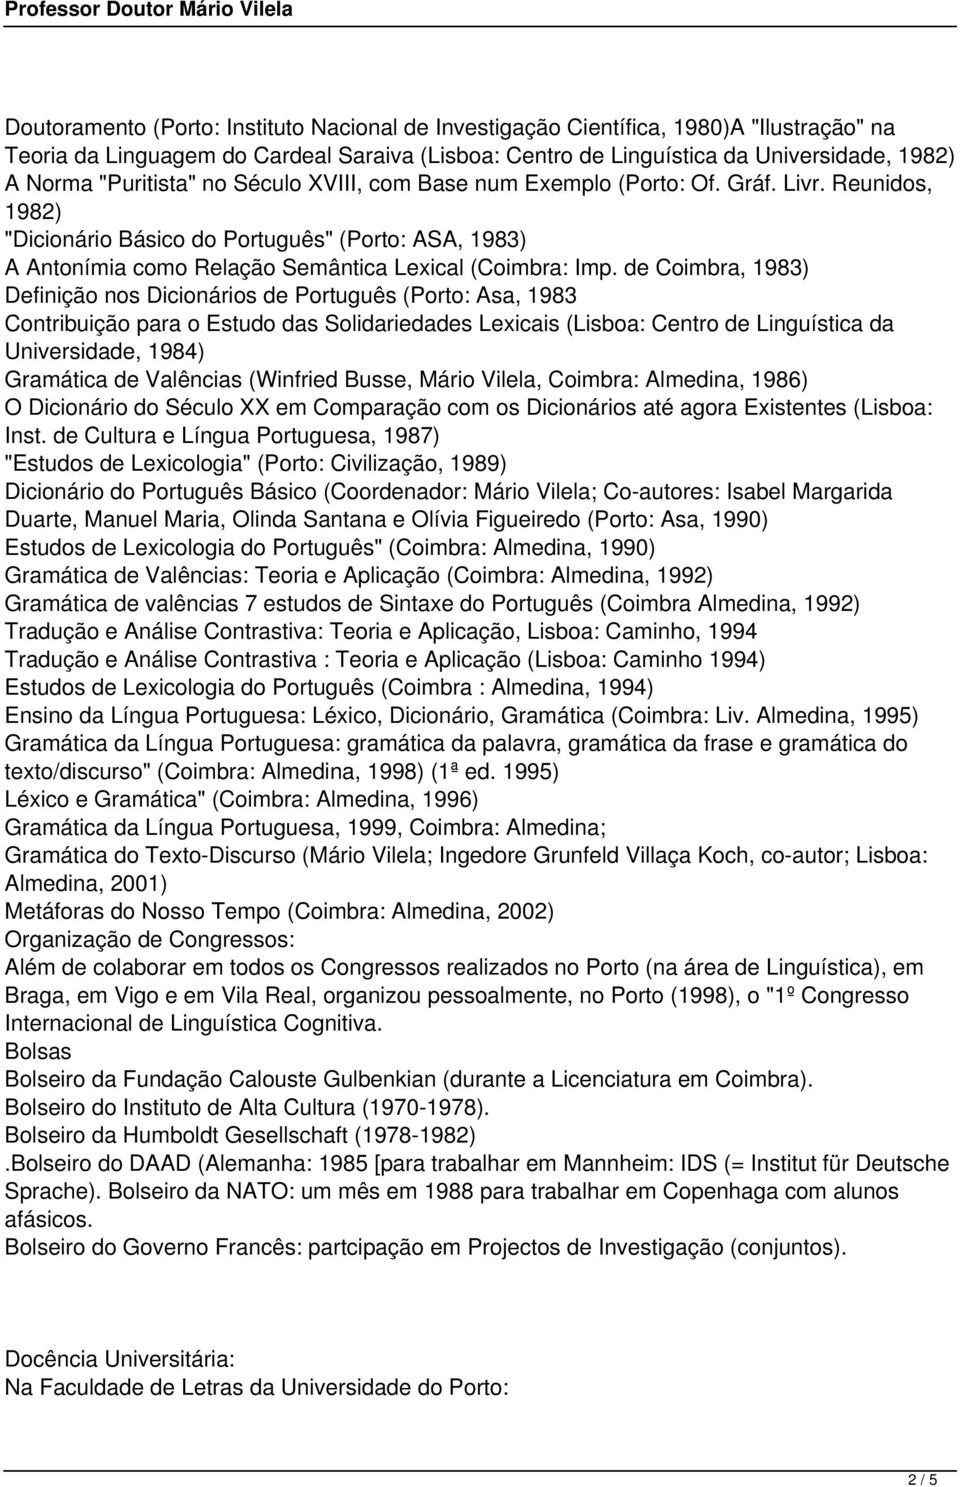 de Coimbra, 1983) Definição nos Dicionários de Português (Porto: Asa, 1983 Contribuição para o Estudo das Solidariedades Lexicais (Lisboa: Centro de Linguística da Universidade, 1984) Gramática de